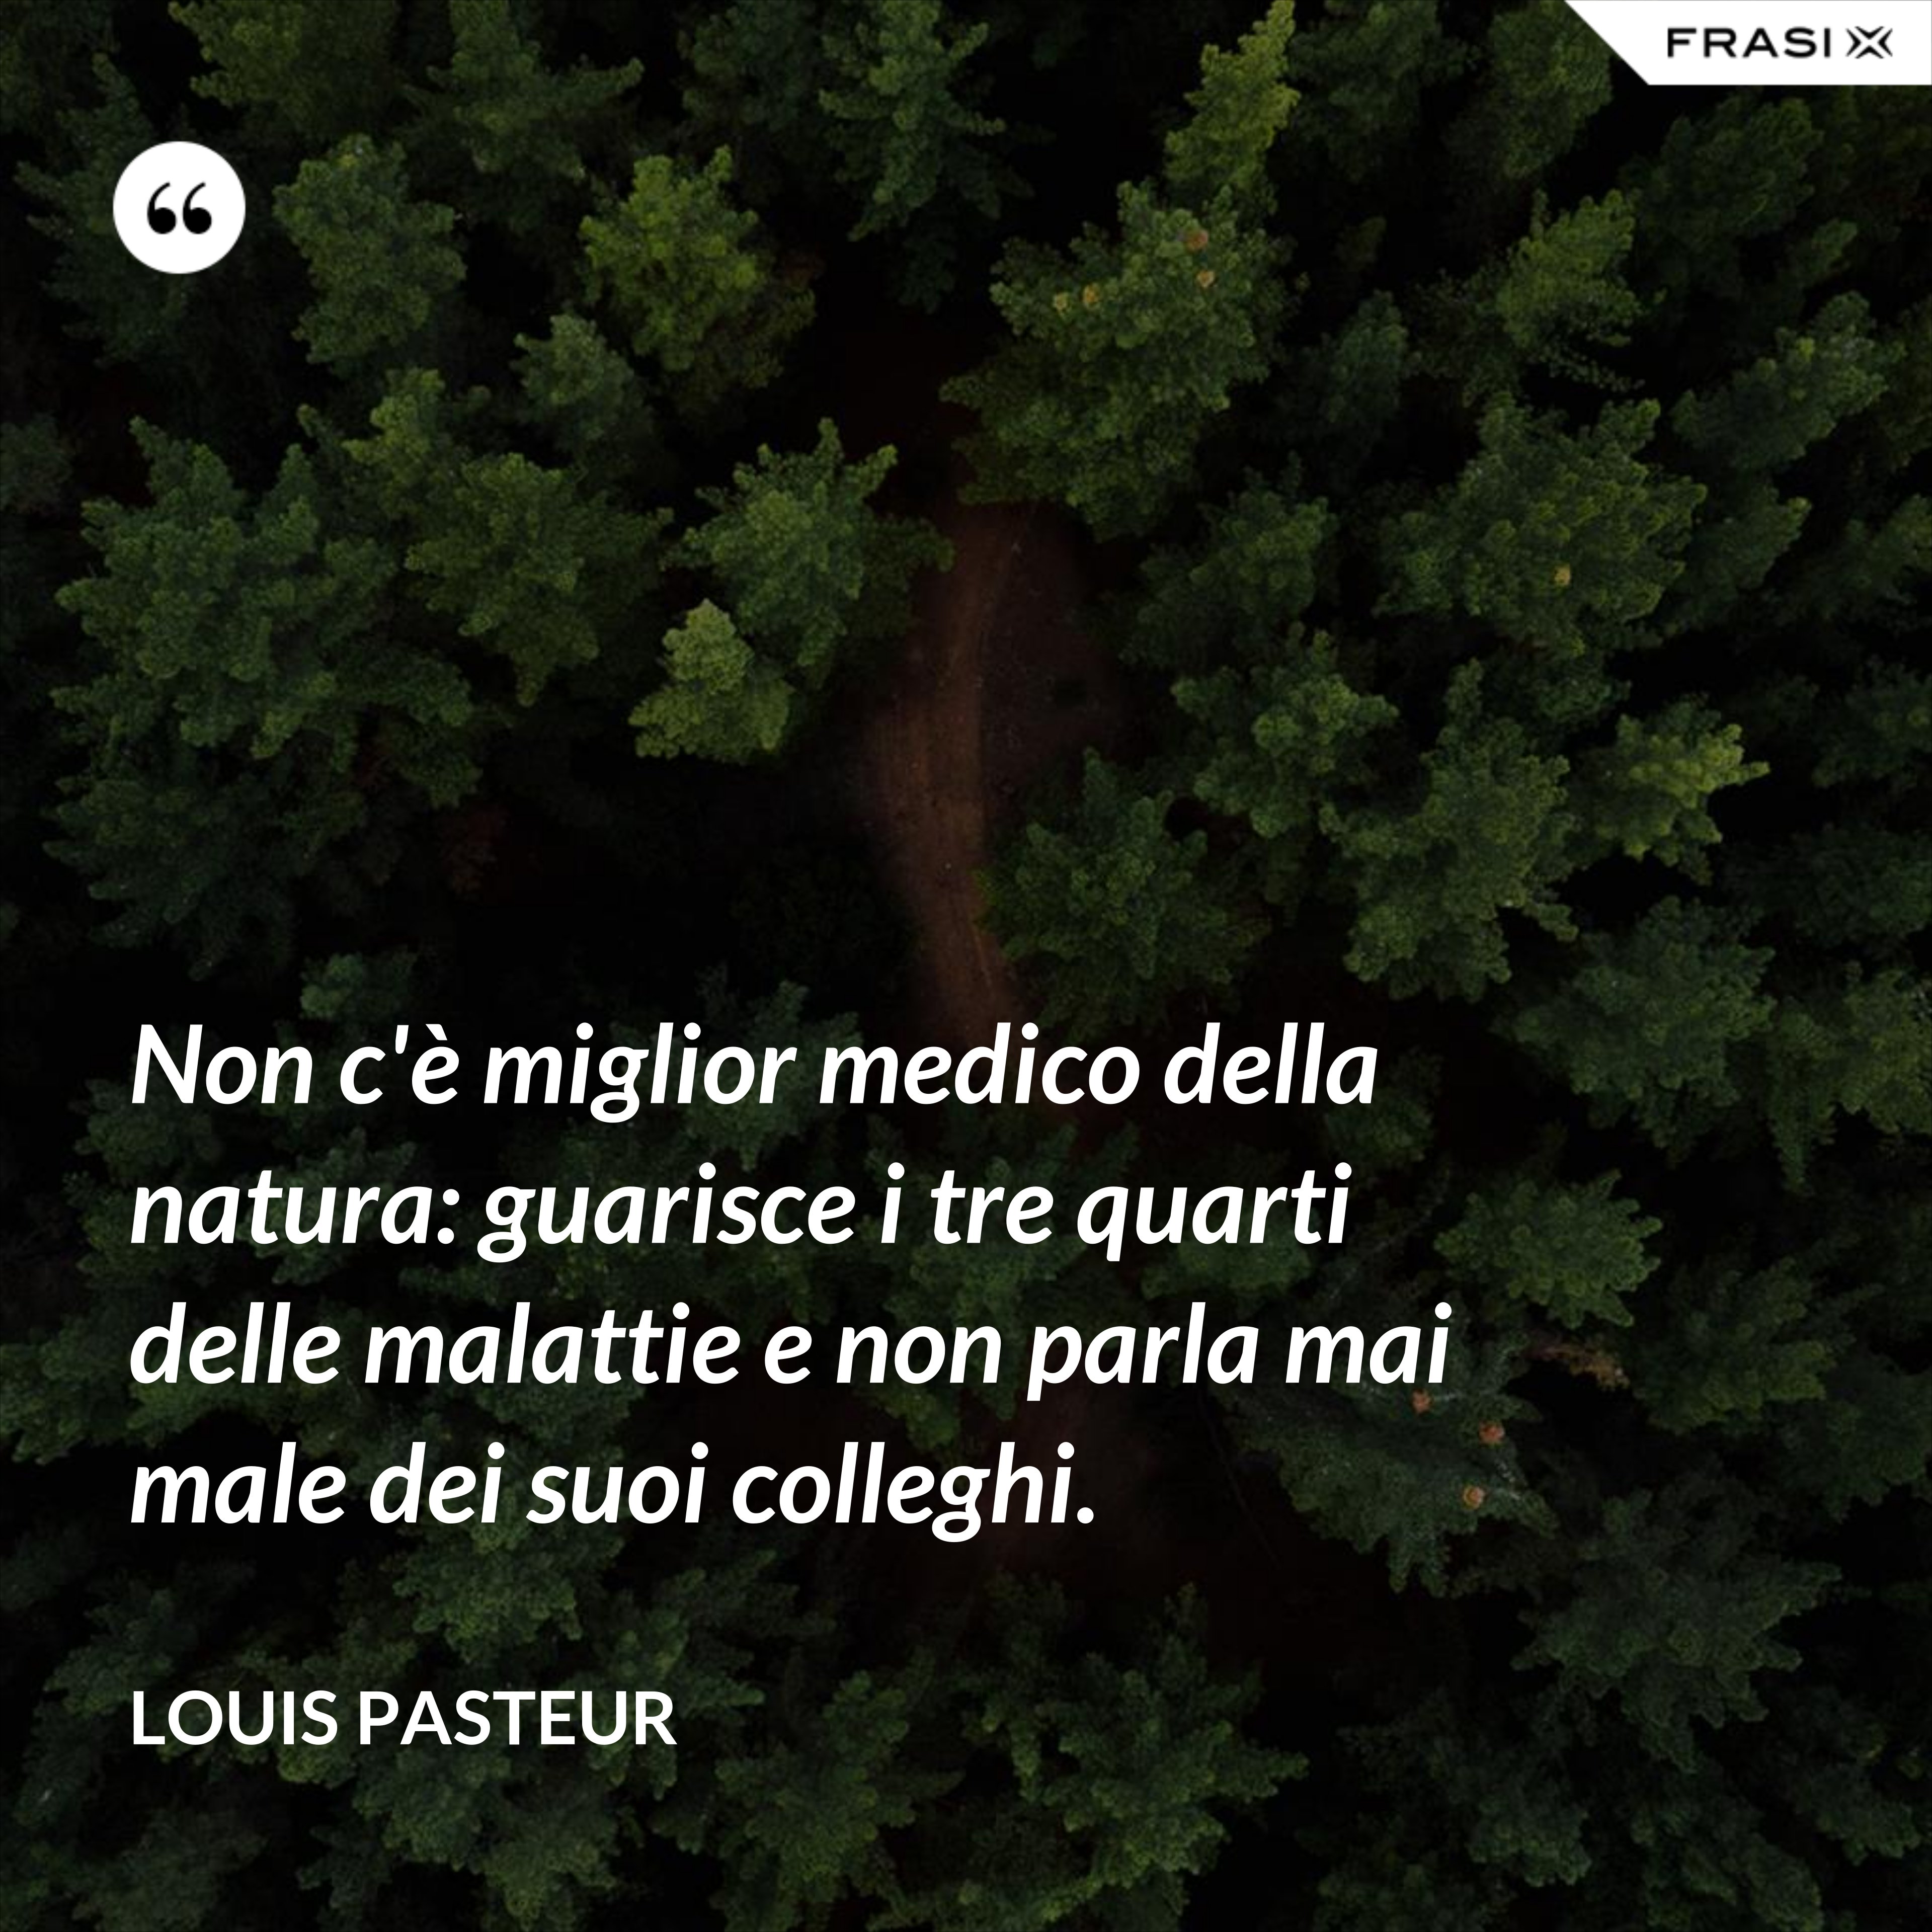 Non c'è miglior medico della natura: guarisce i tre quarti delle malattie e non parla mai male dei suoi colleghi. - Louis Pasteur